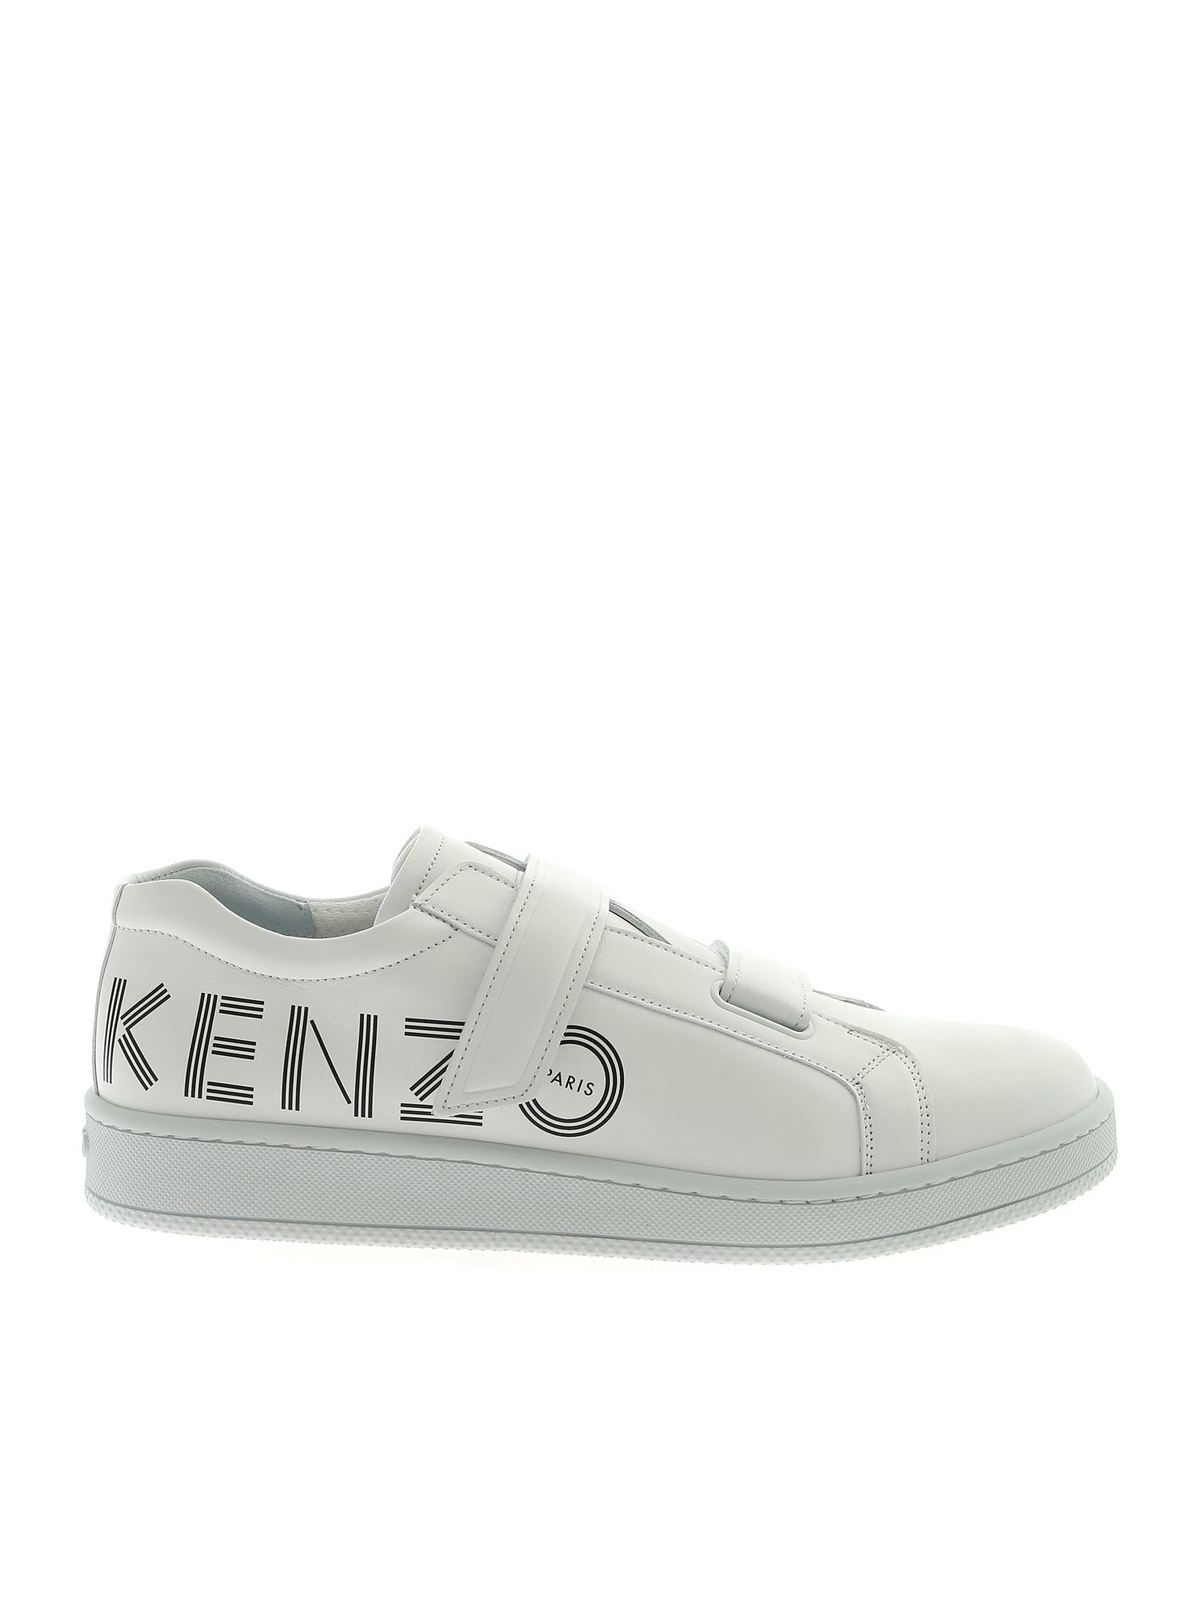 Kenzo - Tennix Scratch sneakers in 